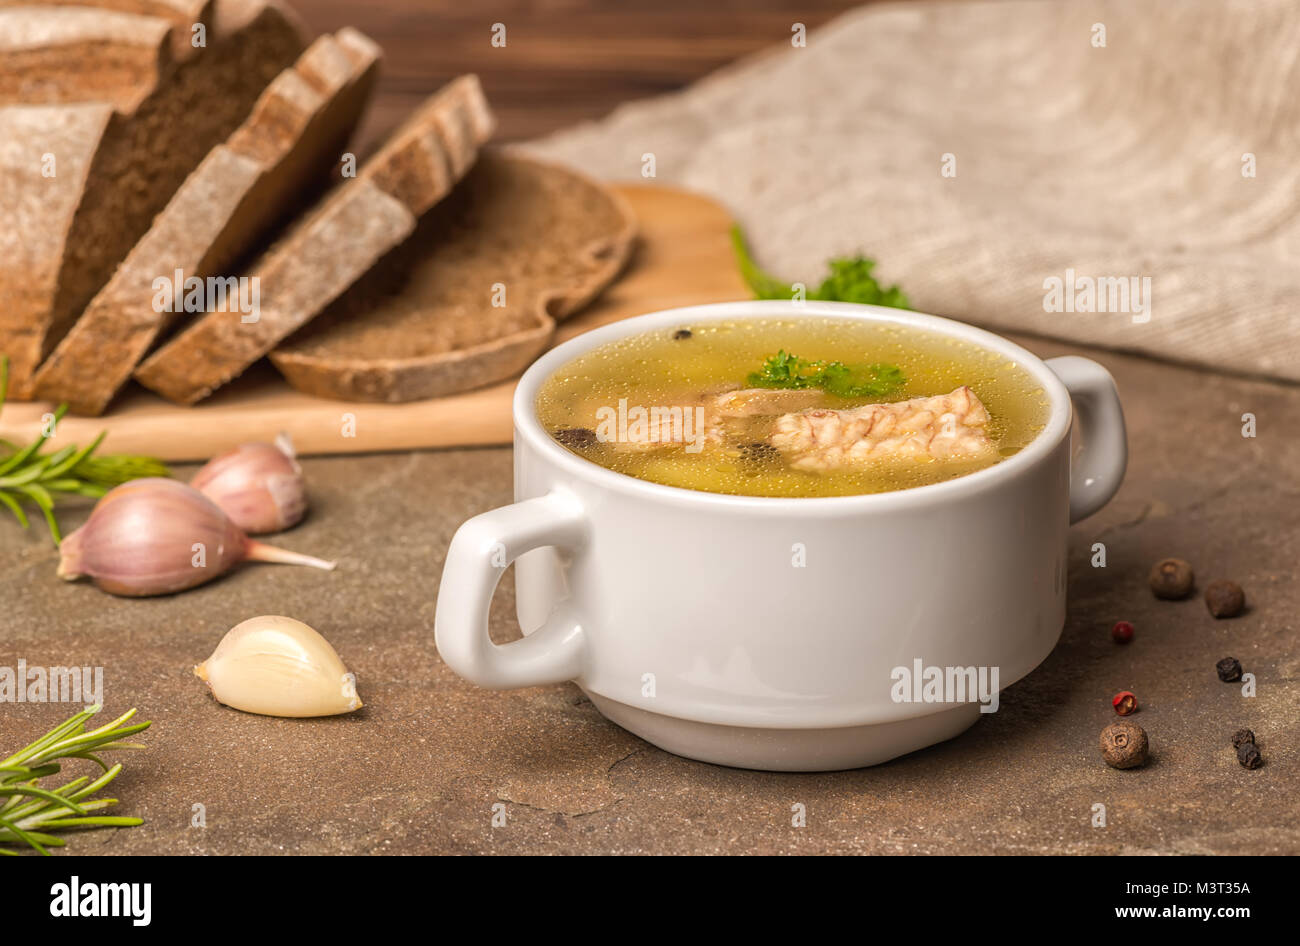 Trasparente fresca zuppa di pesce con lo storione, patate in piastra bianca, decorato di aglio, foglie di prezzemolo e tagliate il pane di segale, mangiare sano Foto Stock